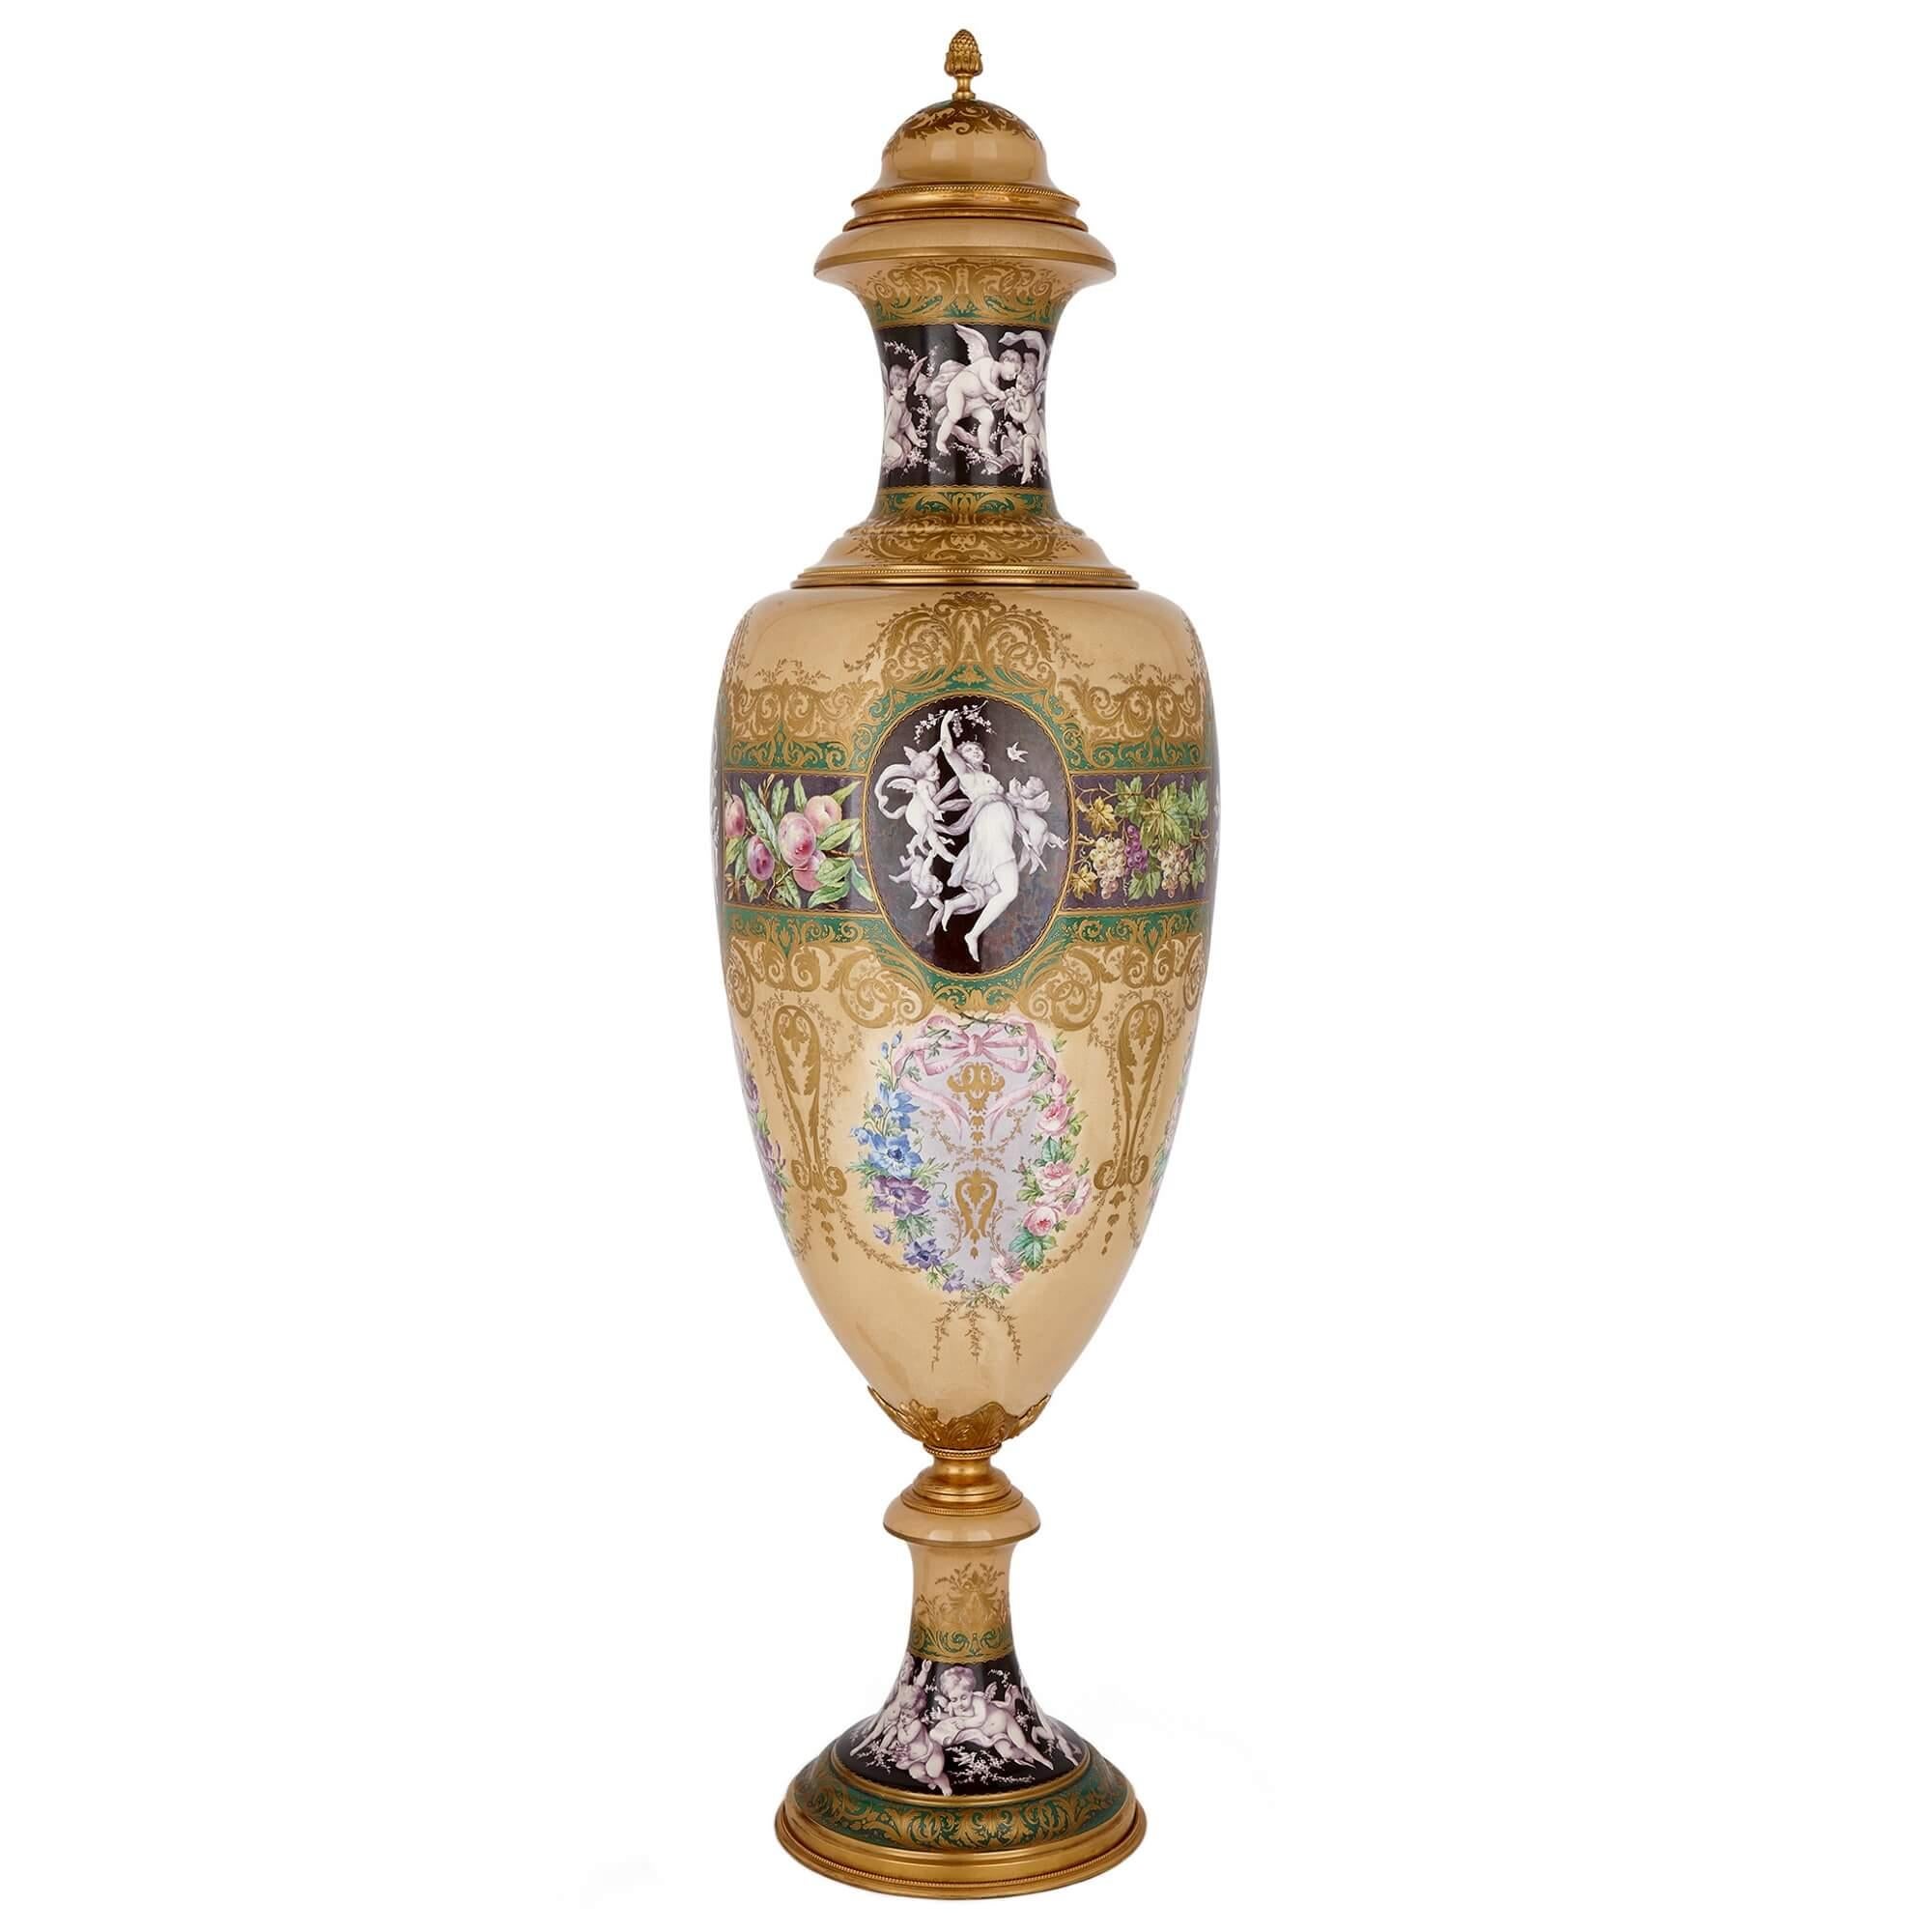 Vase monumental en porcelaine montée en bronze doré de style Sèvres représentant les Quatre Saisons
Français, C.I.C.
Hauteur 152 cm, diamètre 45 cm

Posé sur un fond polychrome, dominé par un fond beige rare et seyant, qui est accentué et bordé